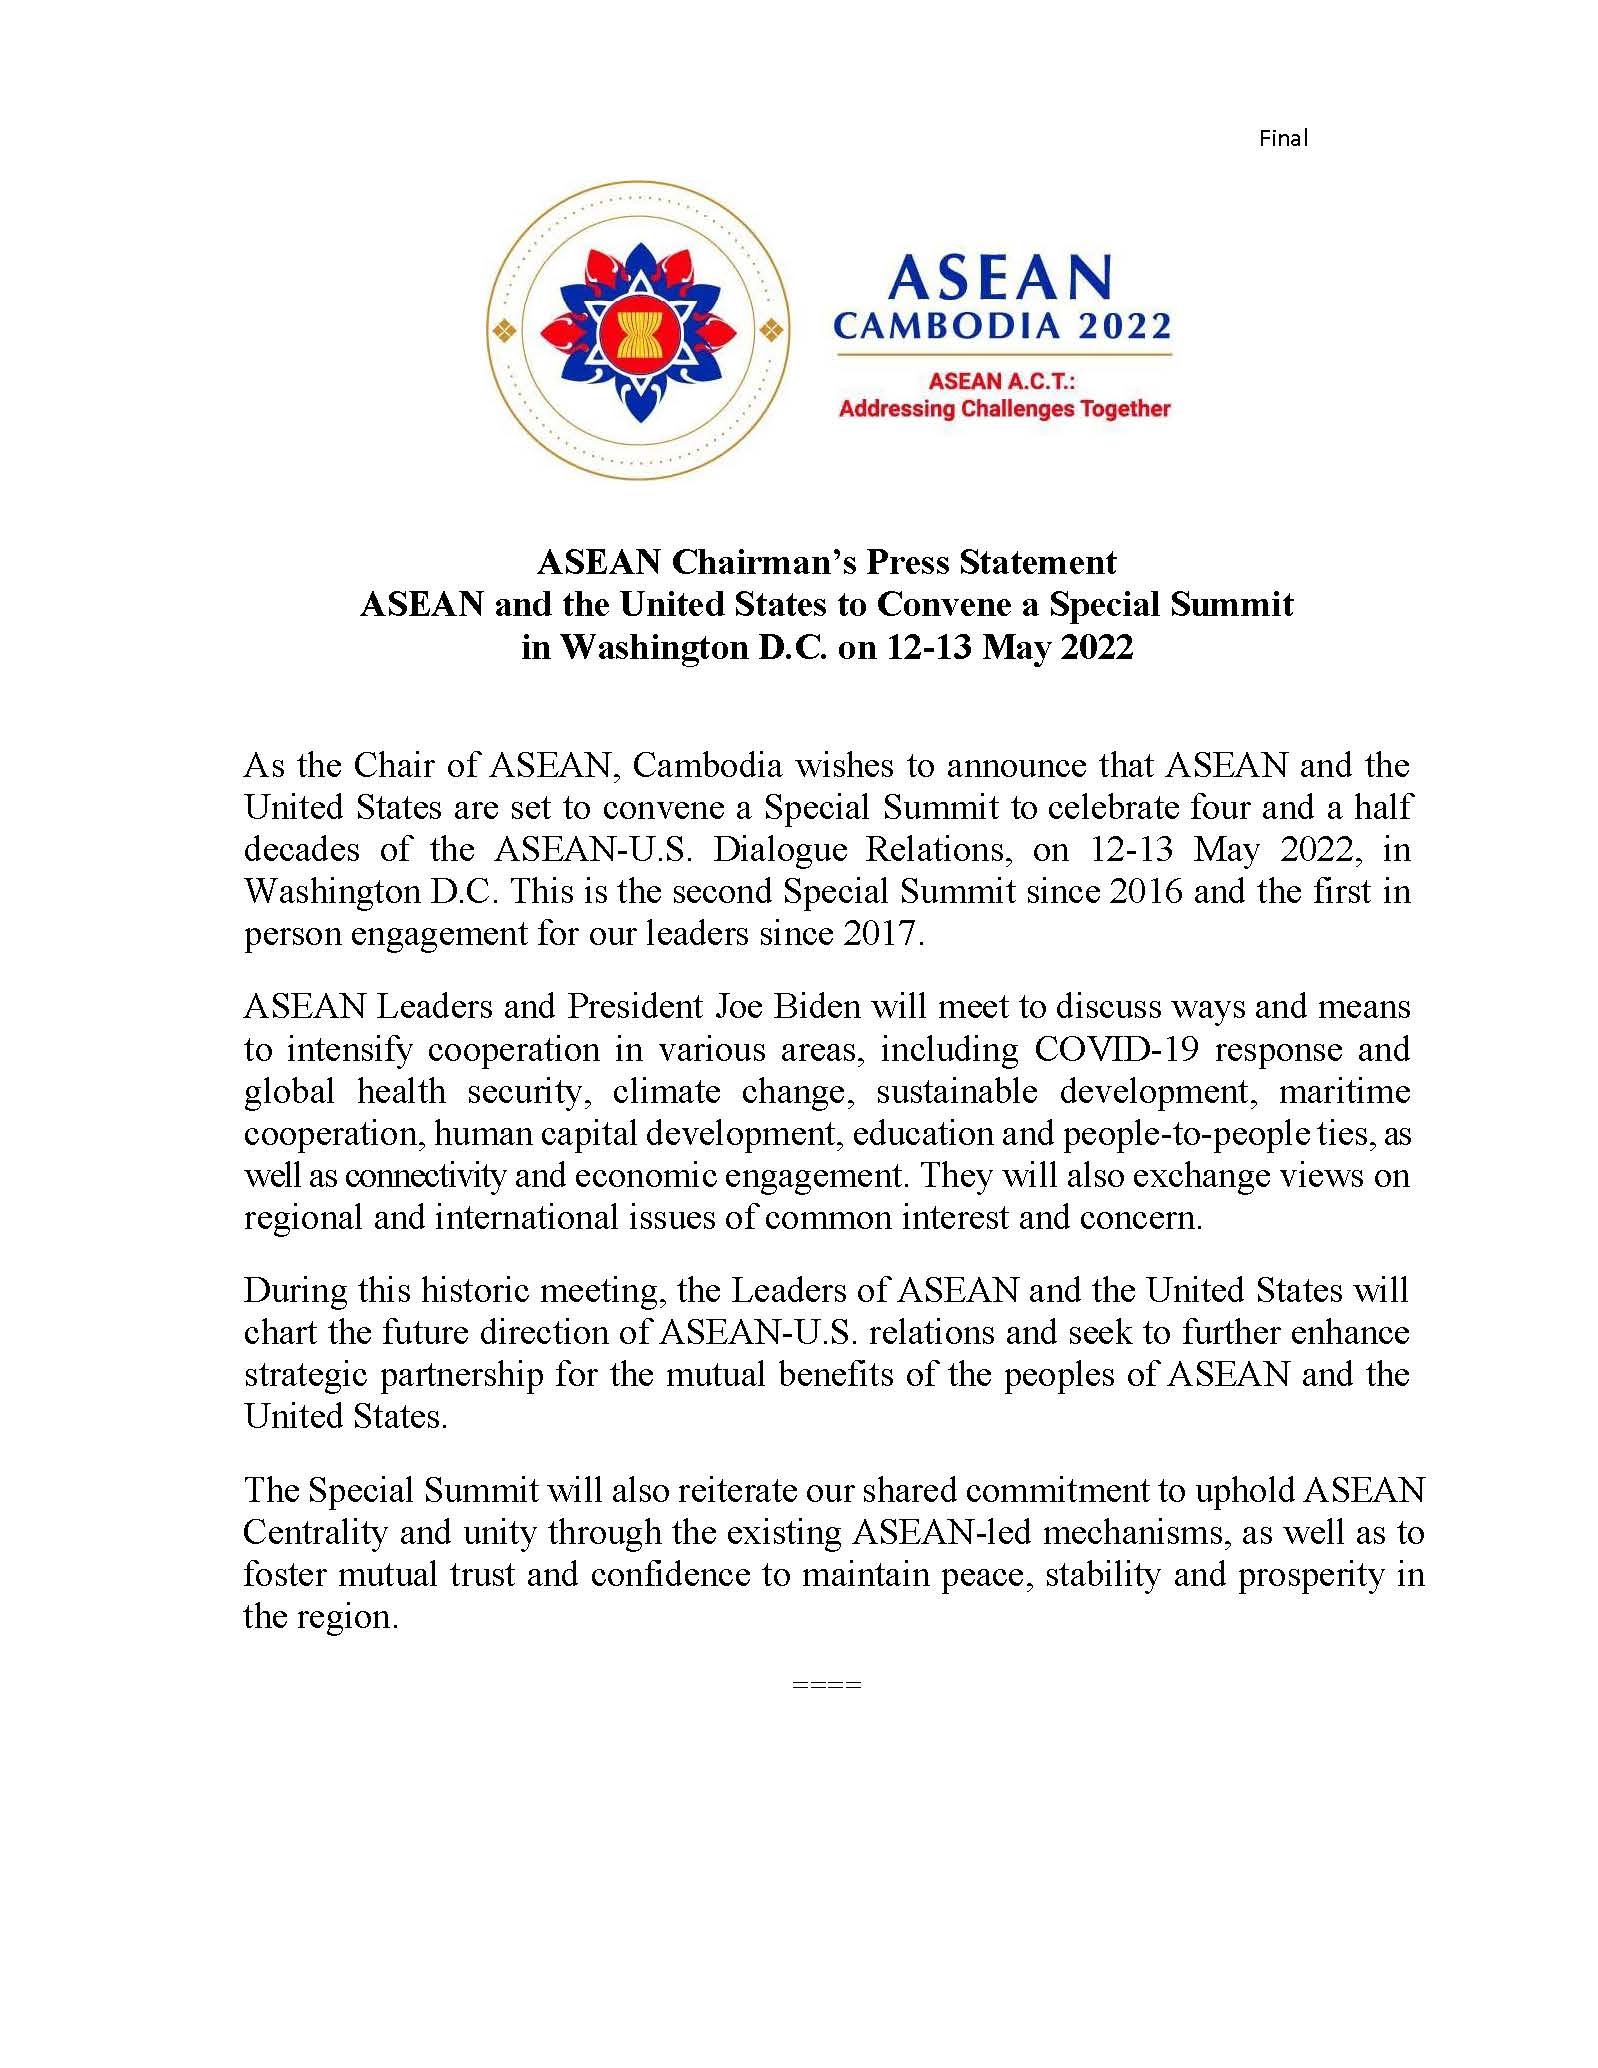 ASEAN_Statement